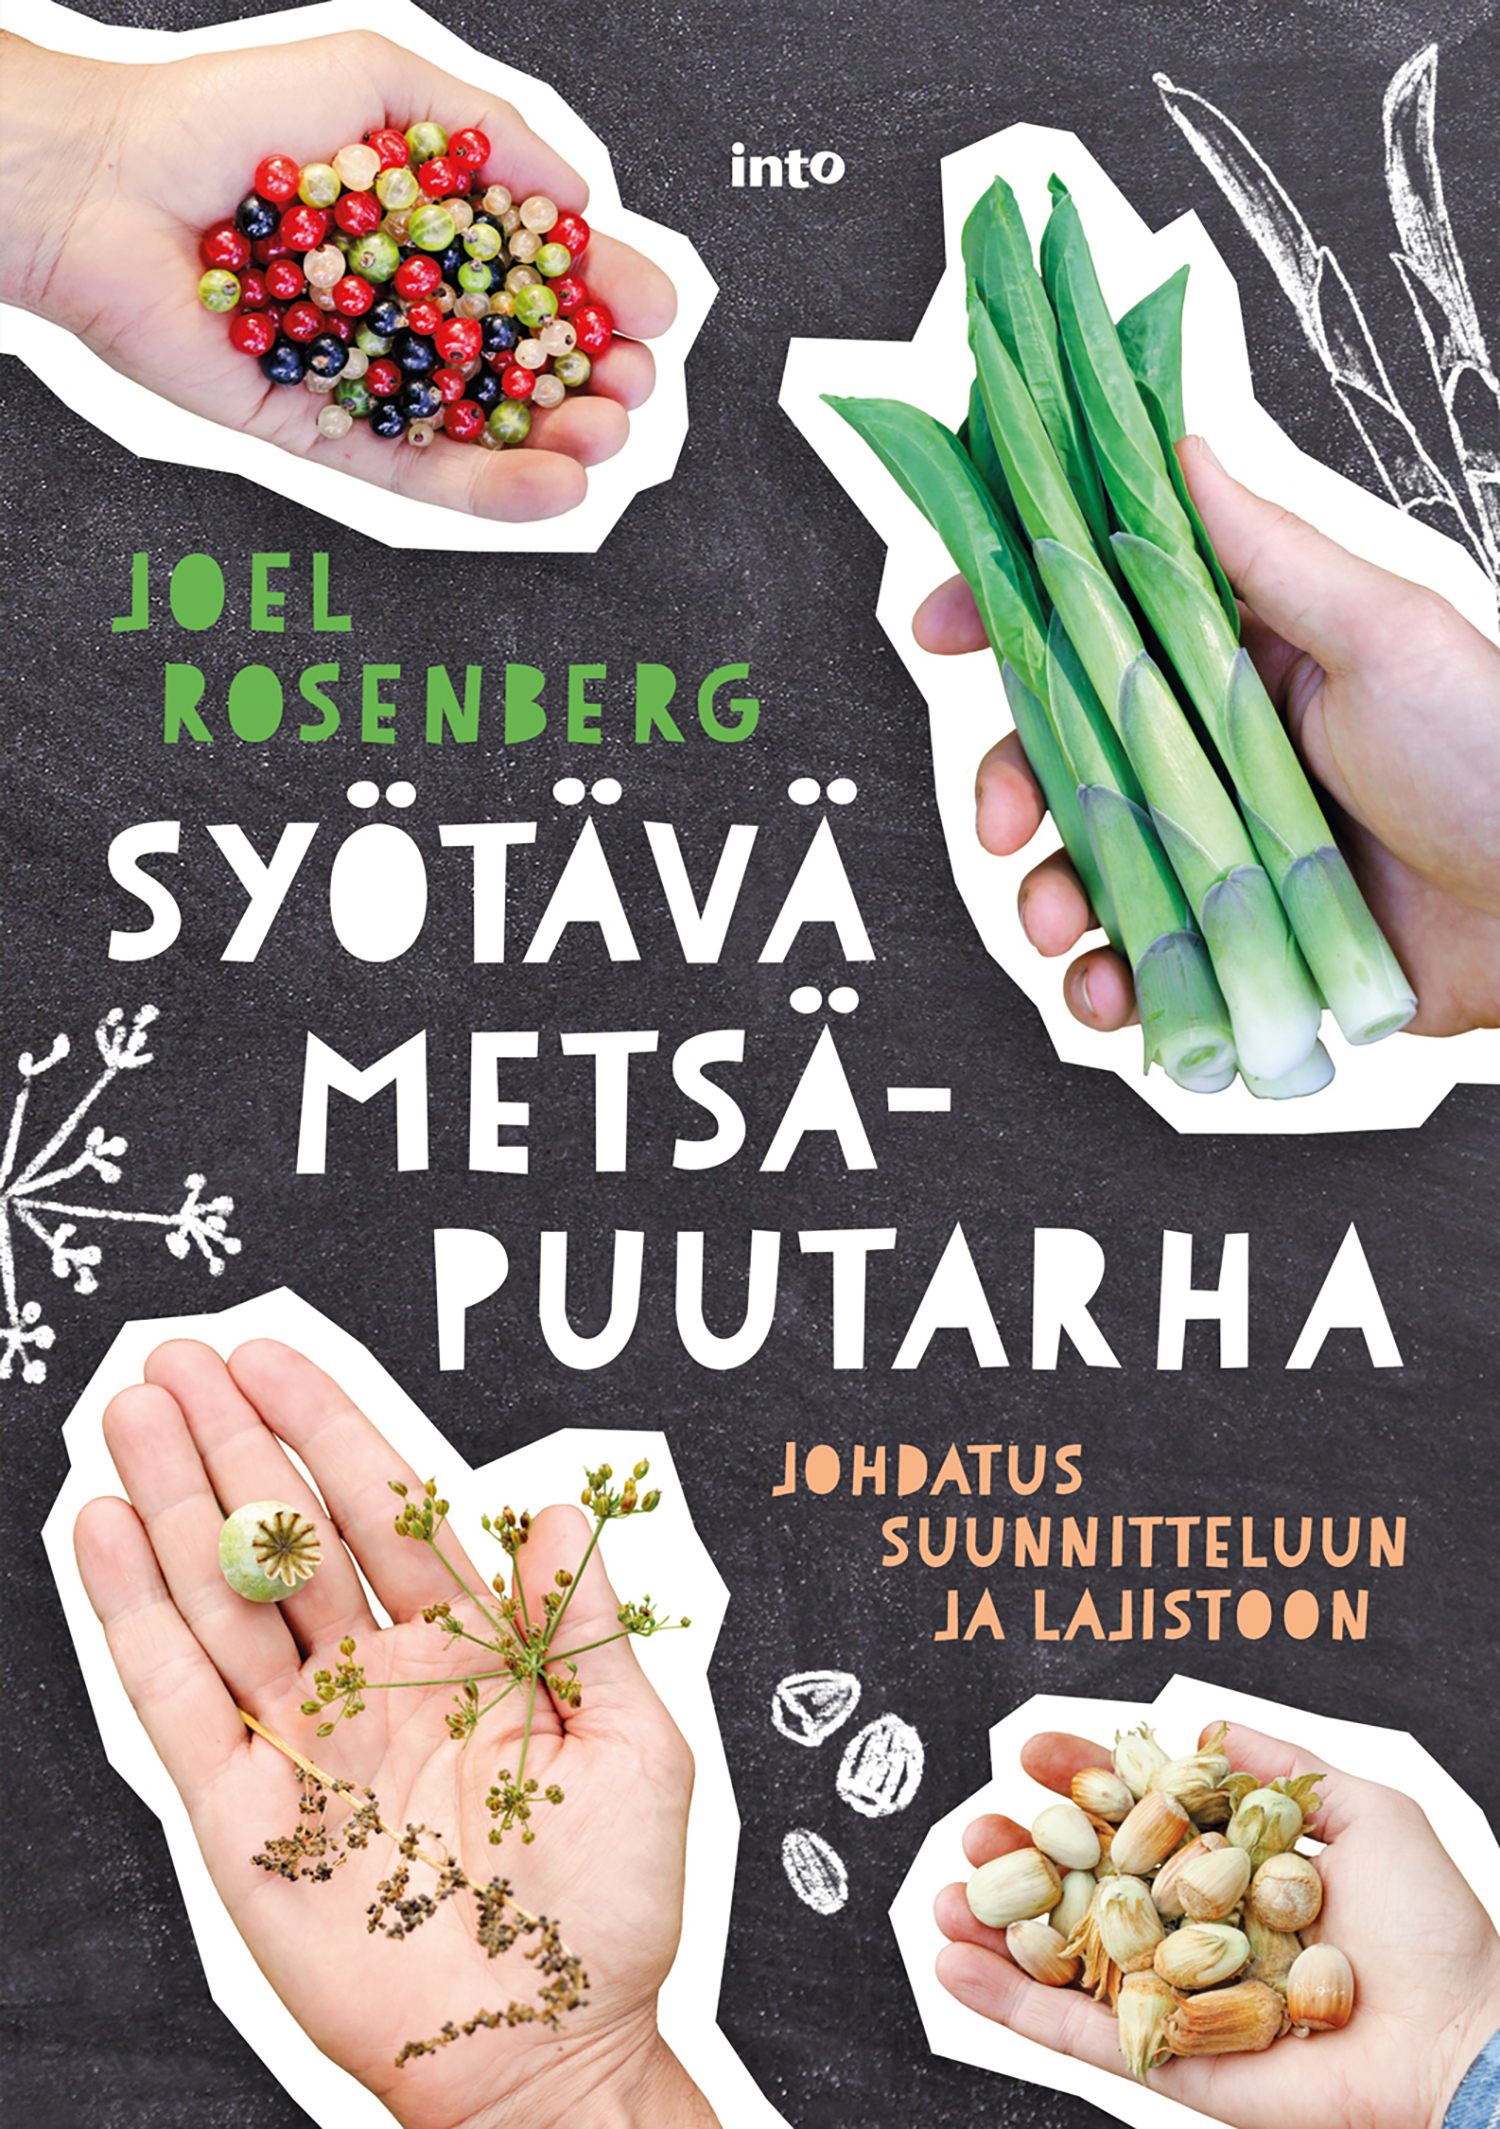 Rosenberg, Joel - Syötävä metsäpuutarha: Johdatus suunnitteluun ja lajistoon, ebook